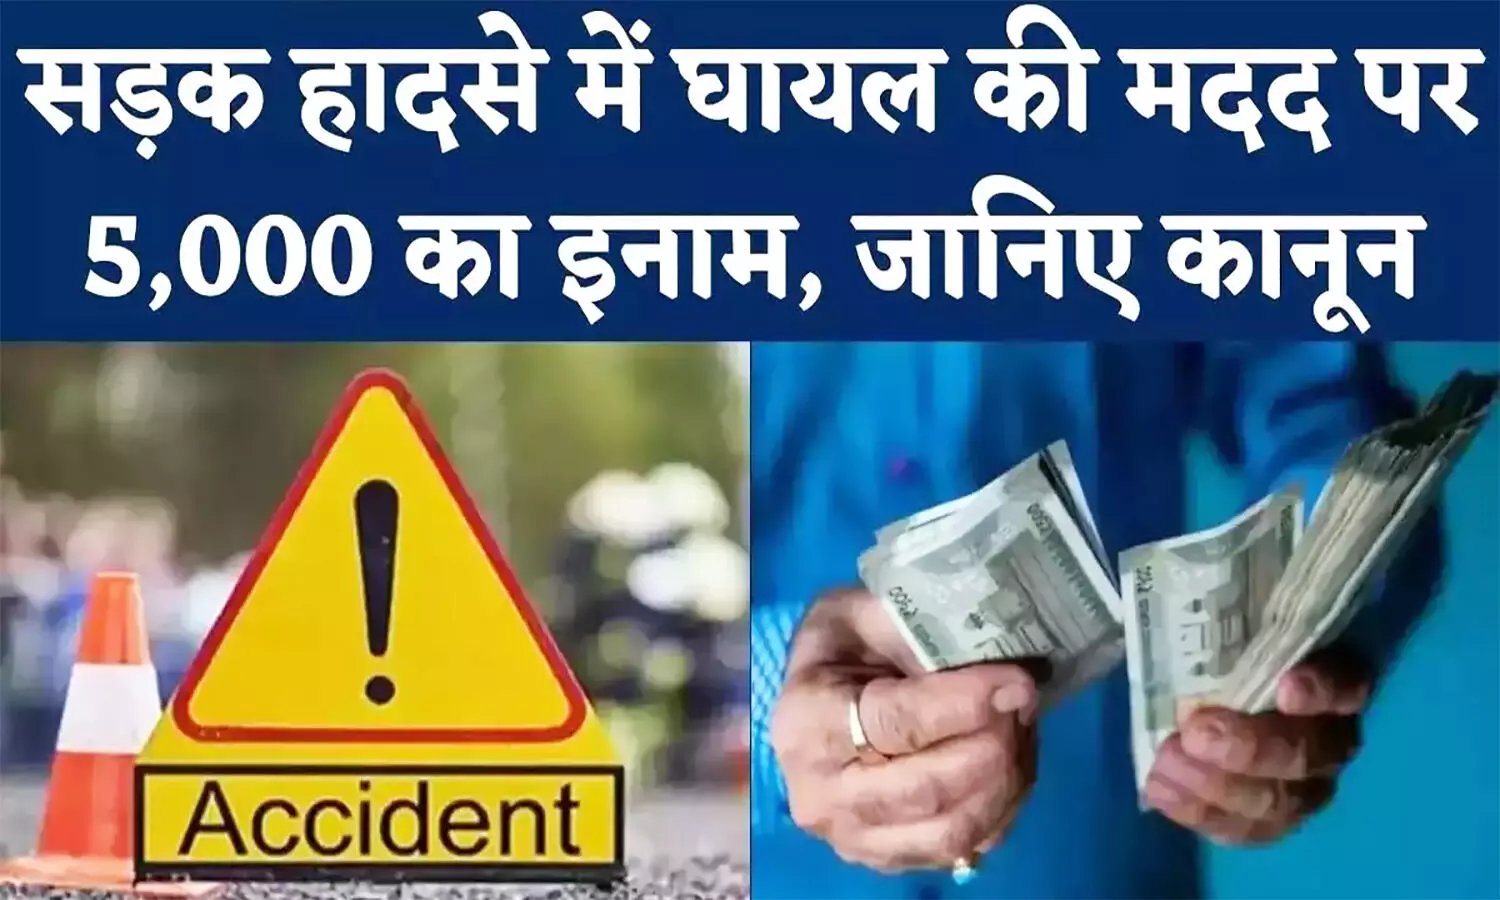 सड़क हादसे में घायल व्यक्ति को तुरंत अस्पताल पहुंचाएं मिलेंगे ₹5000